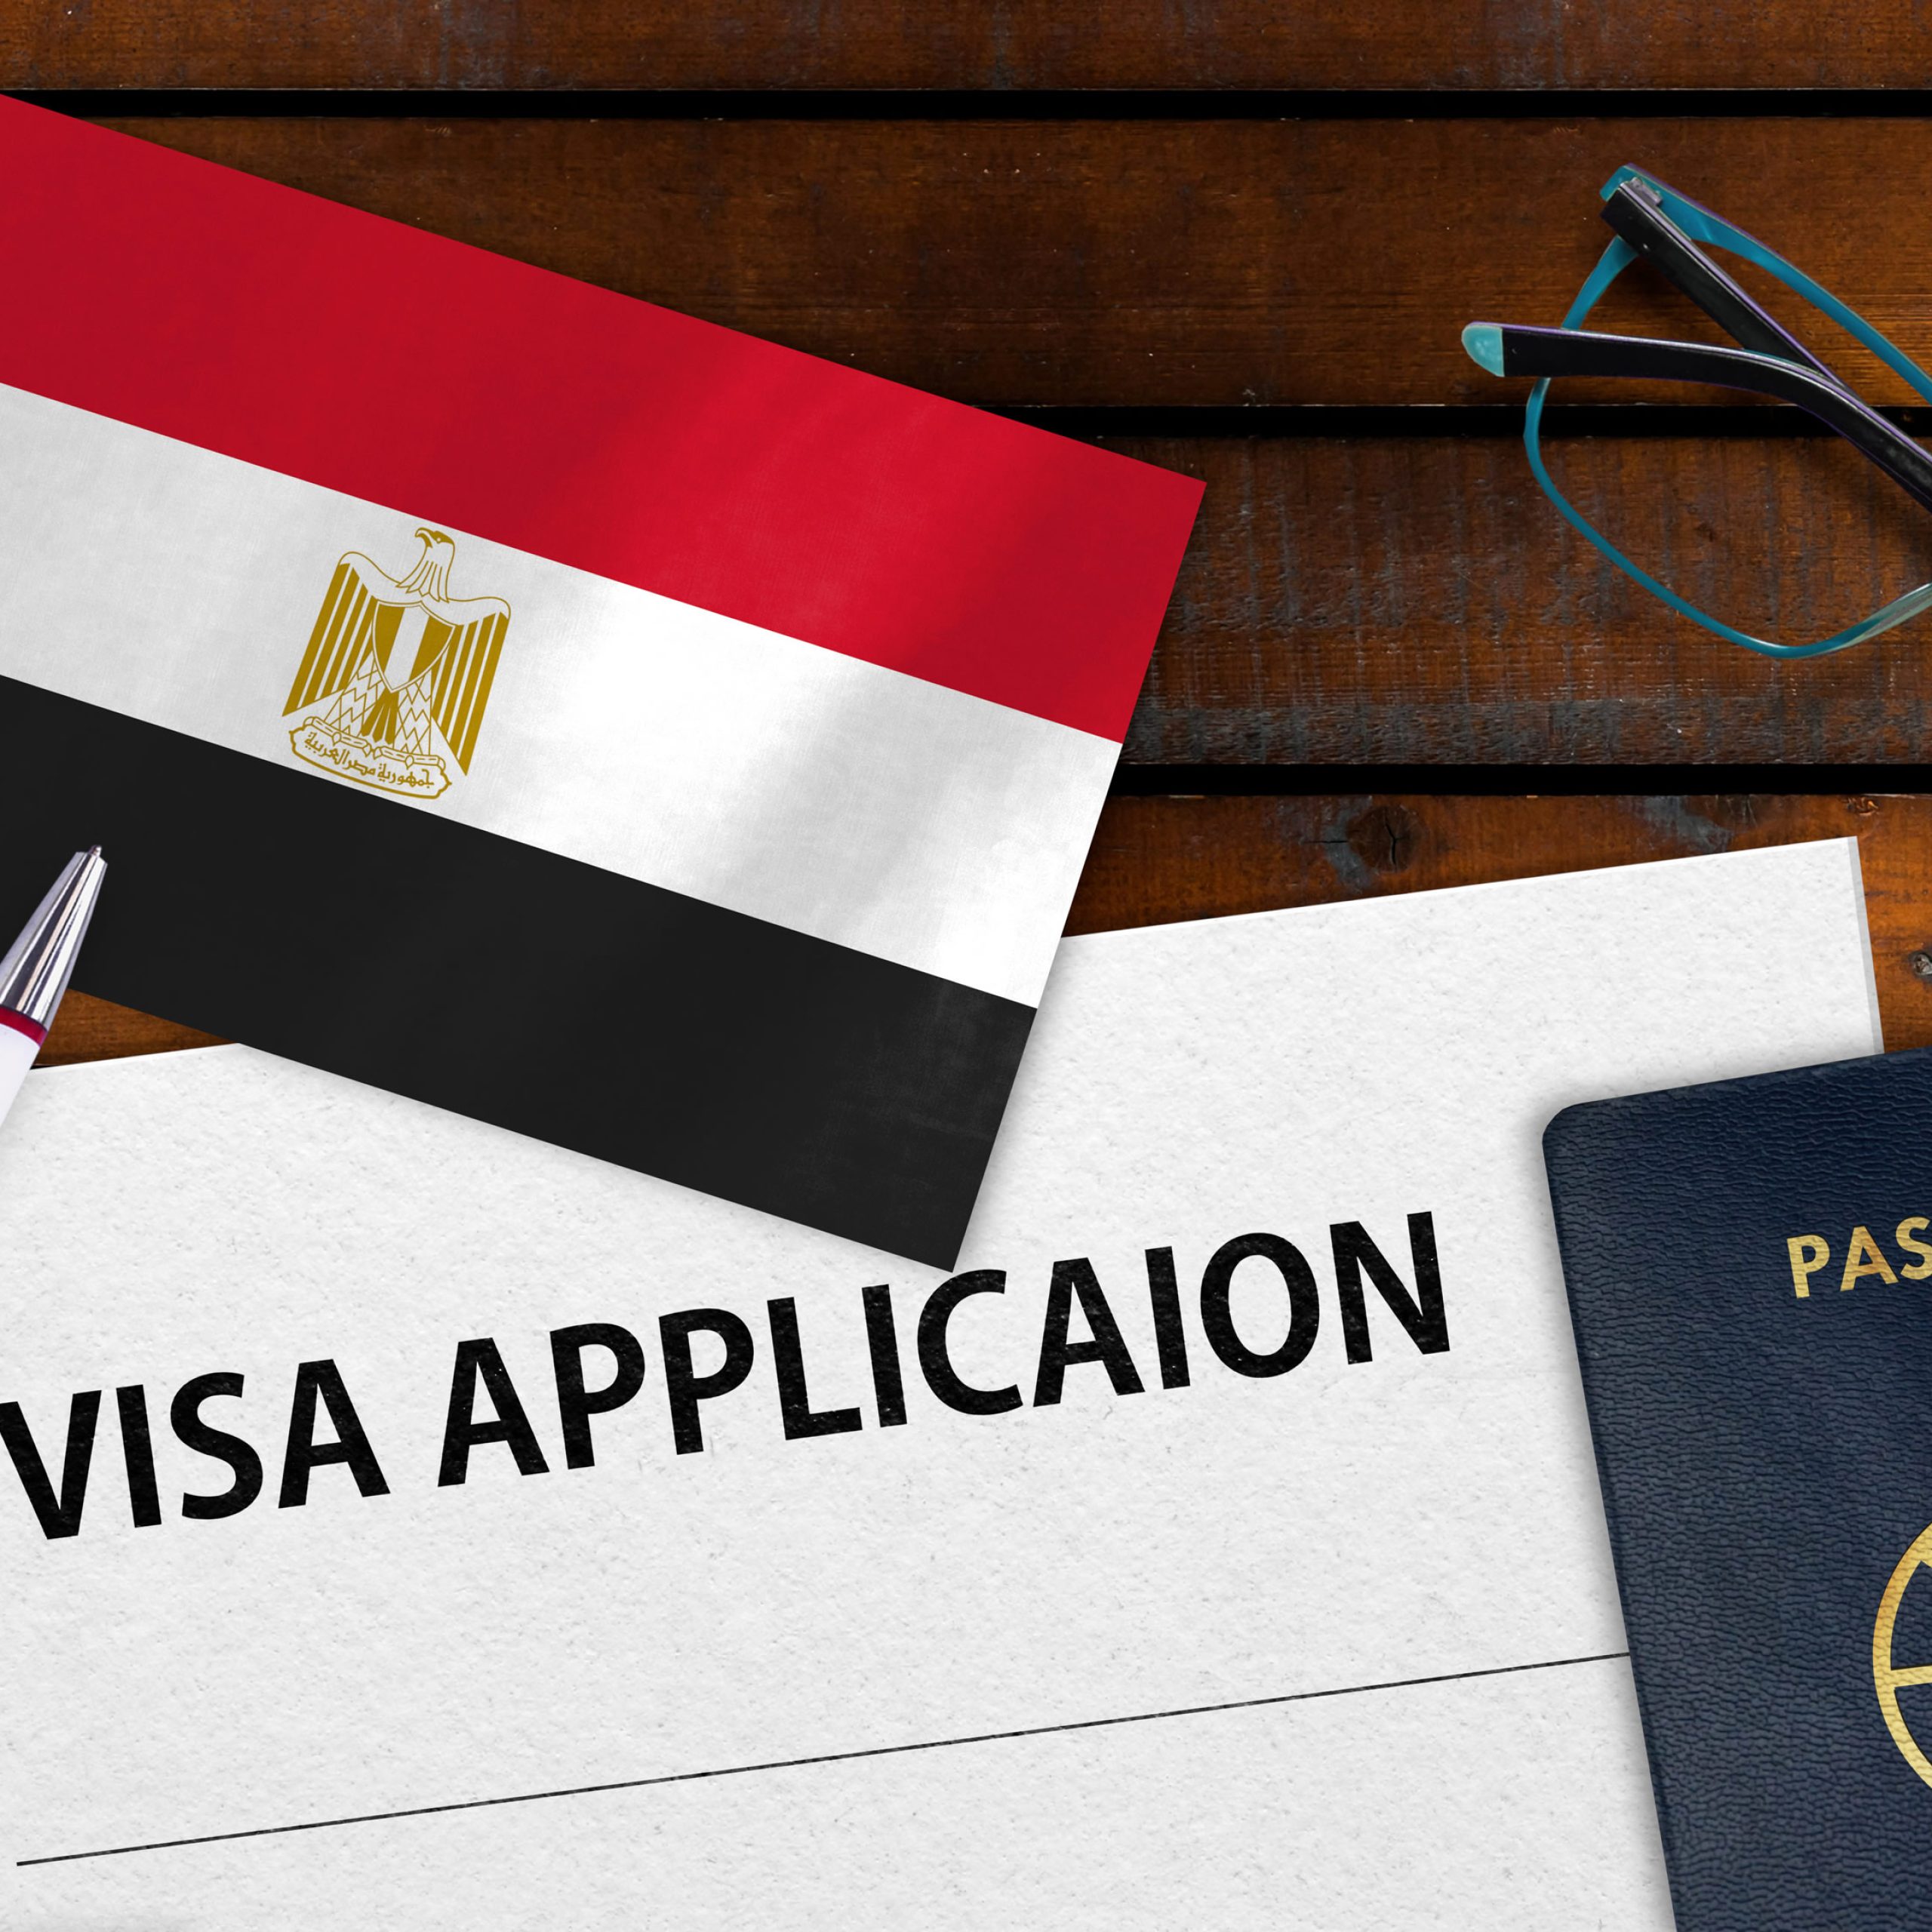 أهم المعلومات للحصول علي تأشيرة زيارة مصر